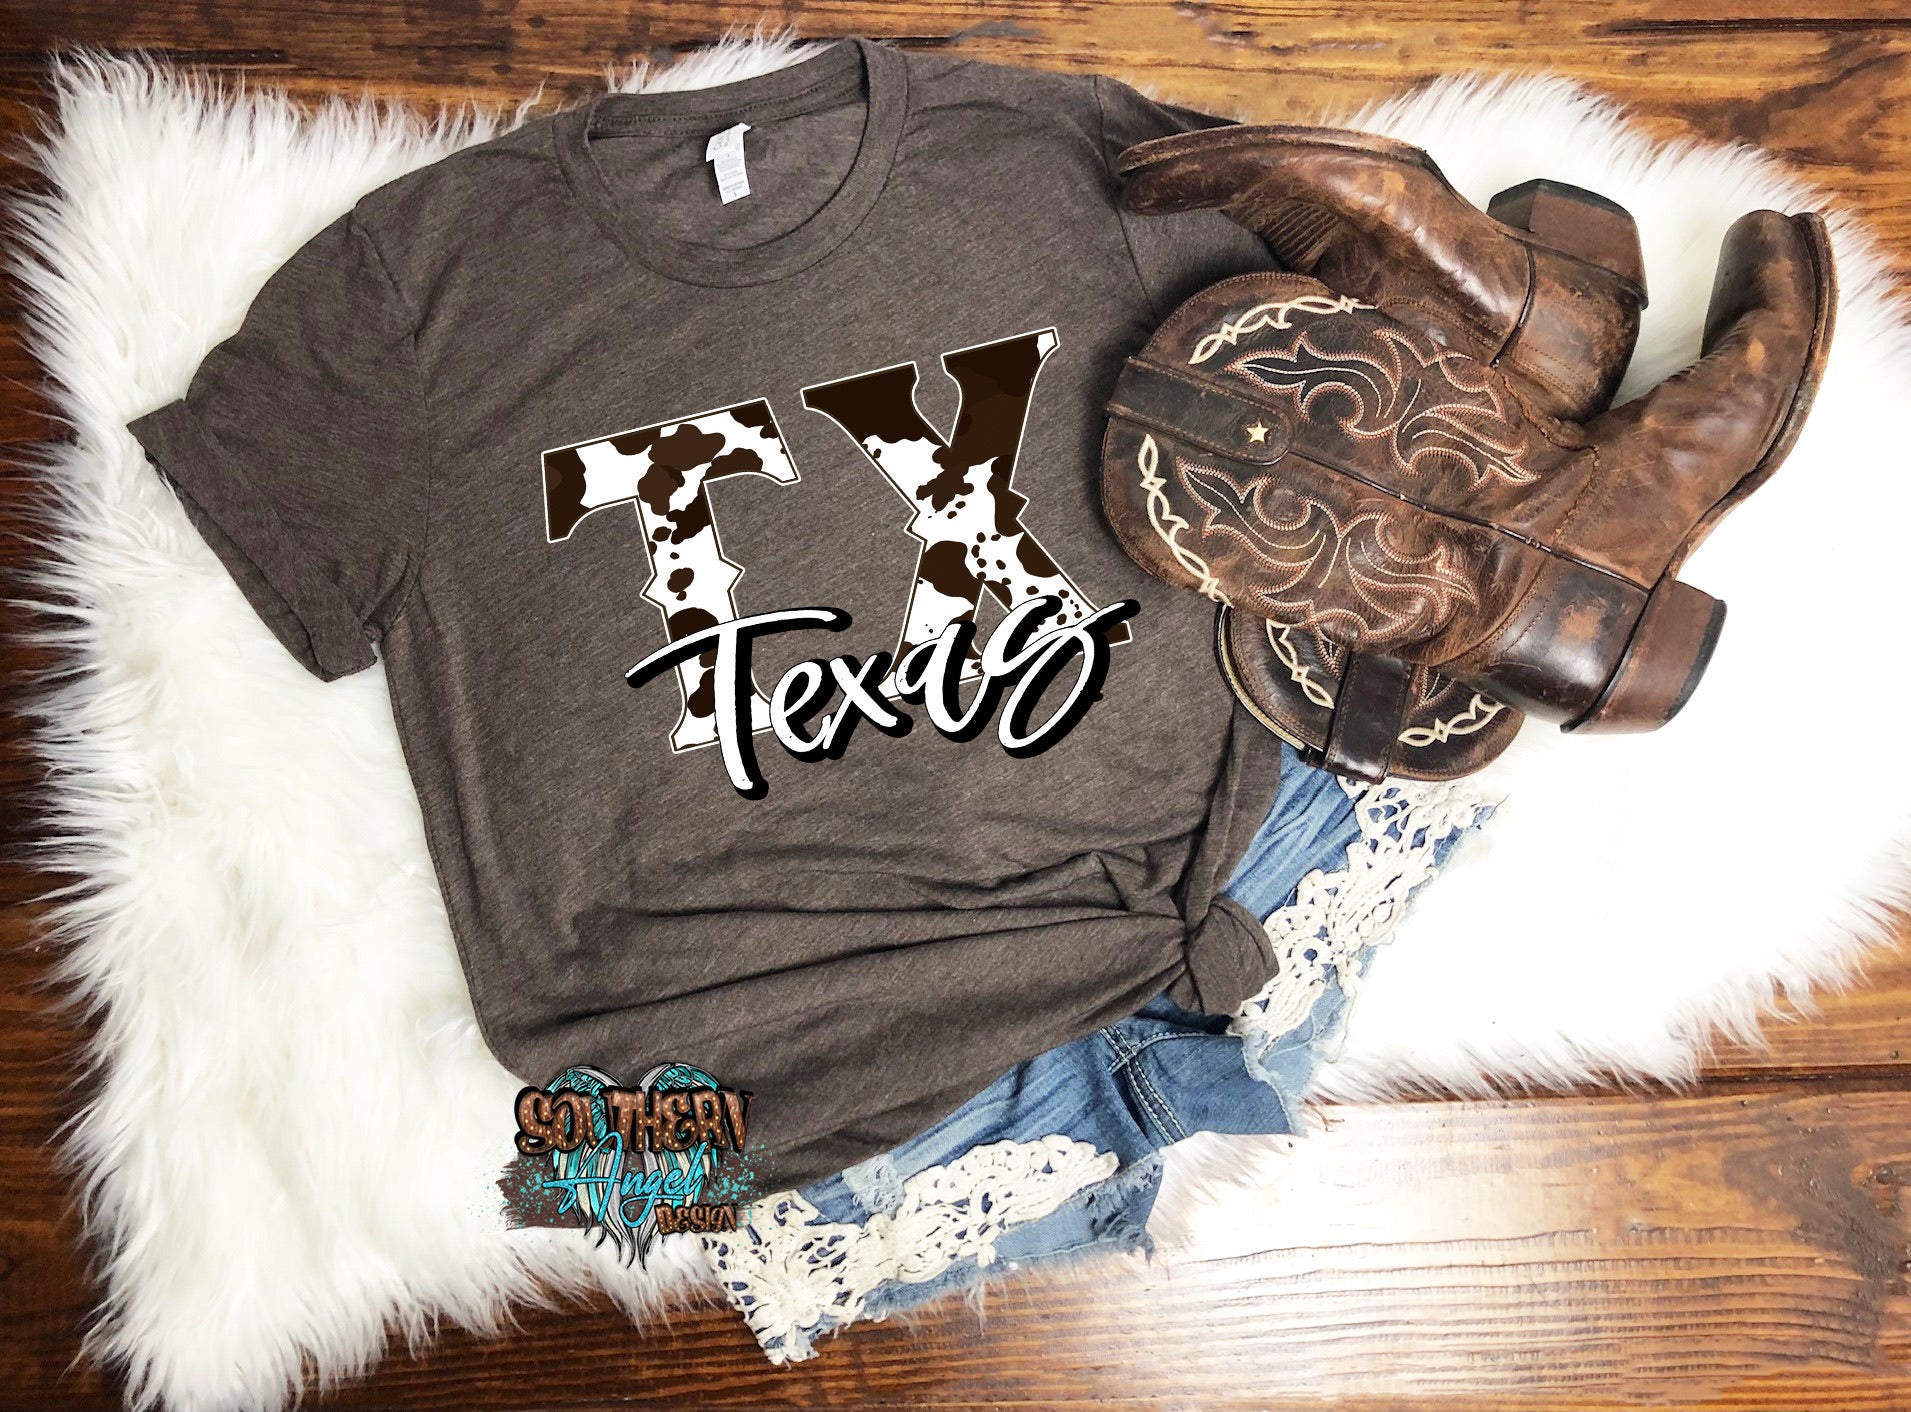 Dim Gray Cowhide Texas t-shirt image_bb219cfe-b3a8-468e-b785-f0bacf7bf33e.jpg cowhide-texas-t-shirt Adult Farm & Ranch